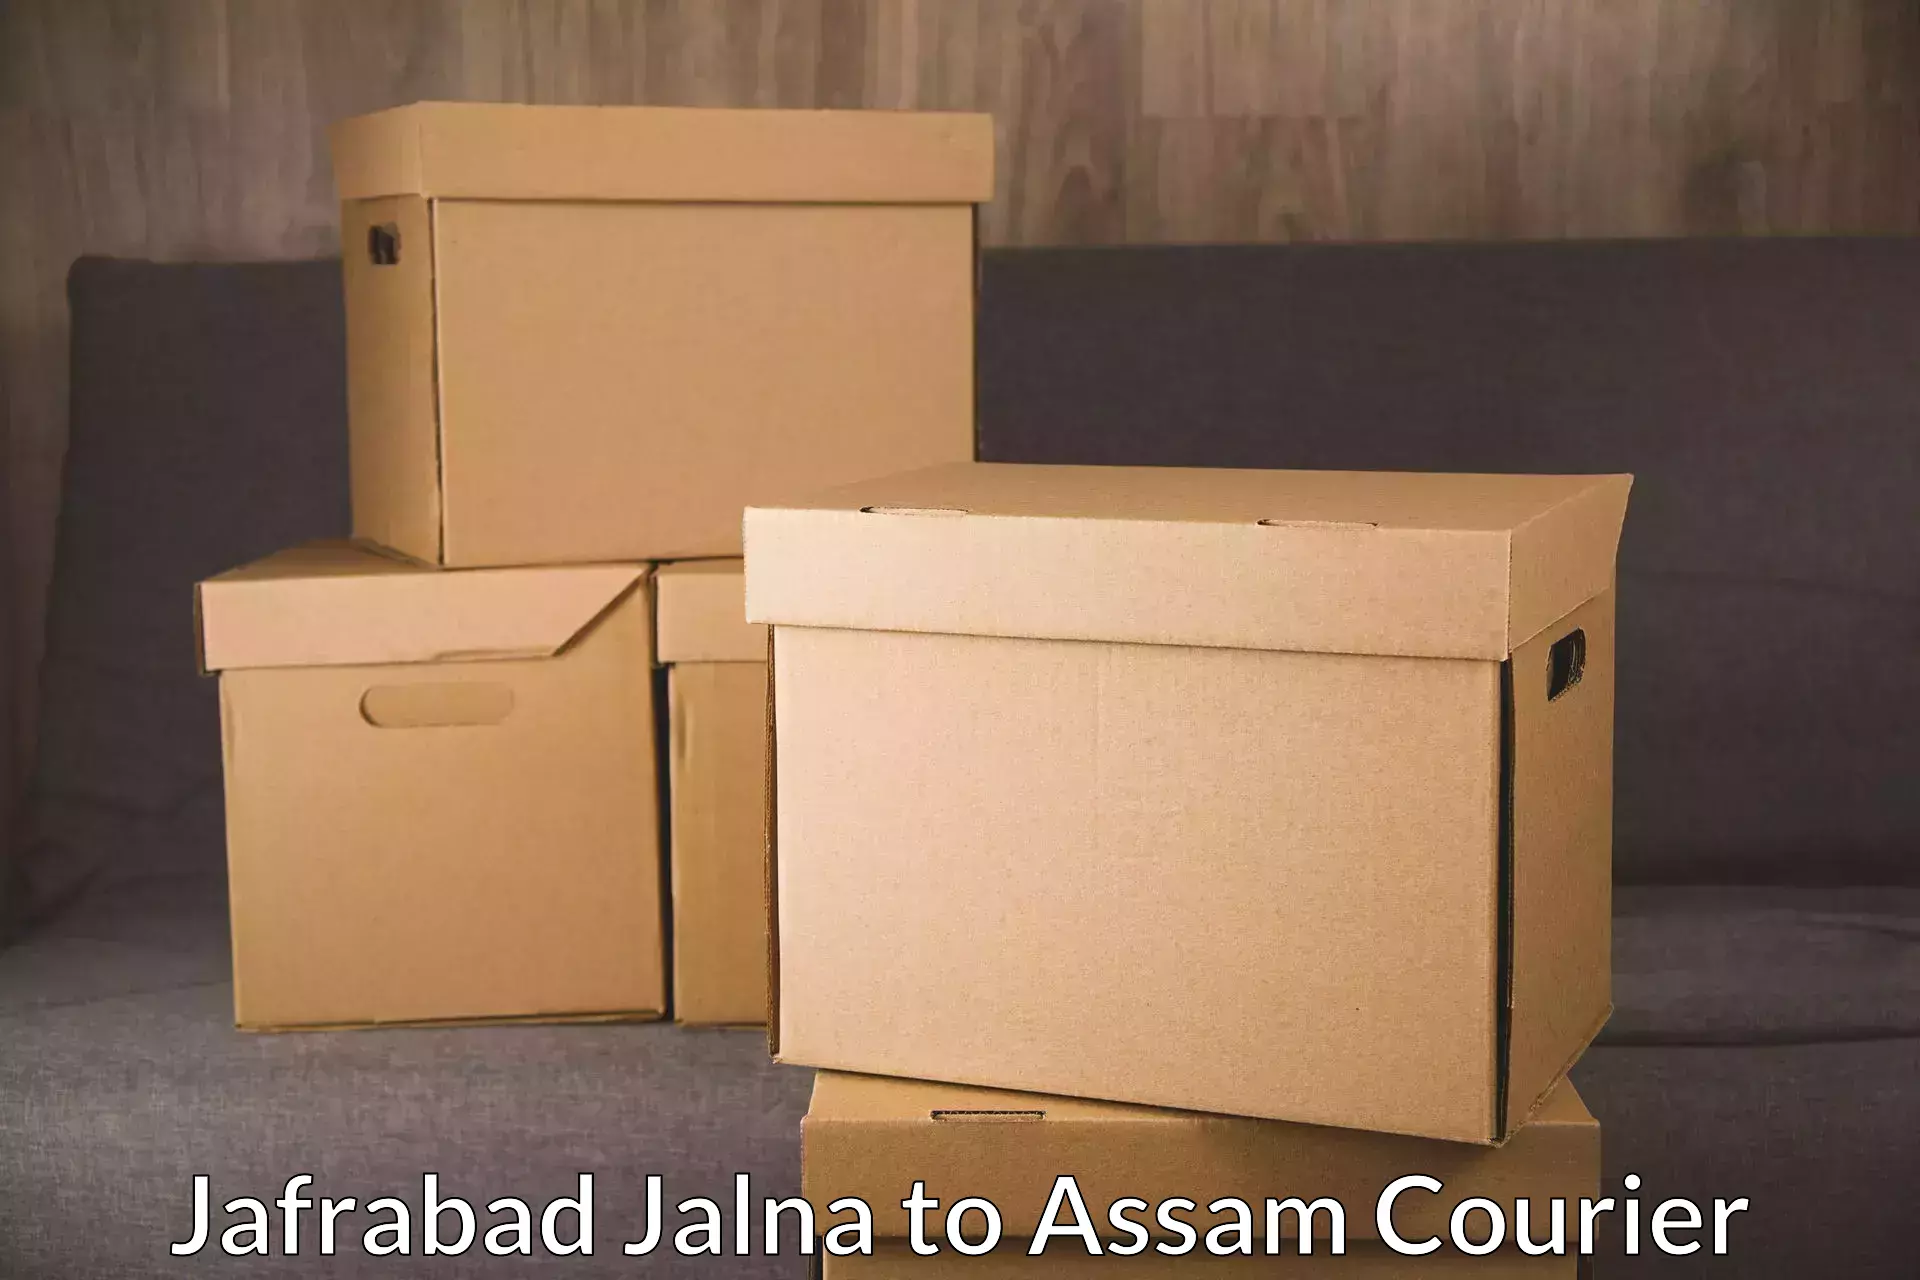 Sustainable shipping practices Jafrabad Jalna to Amoni